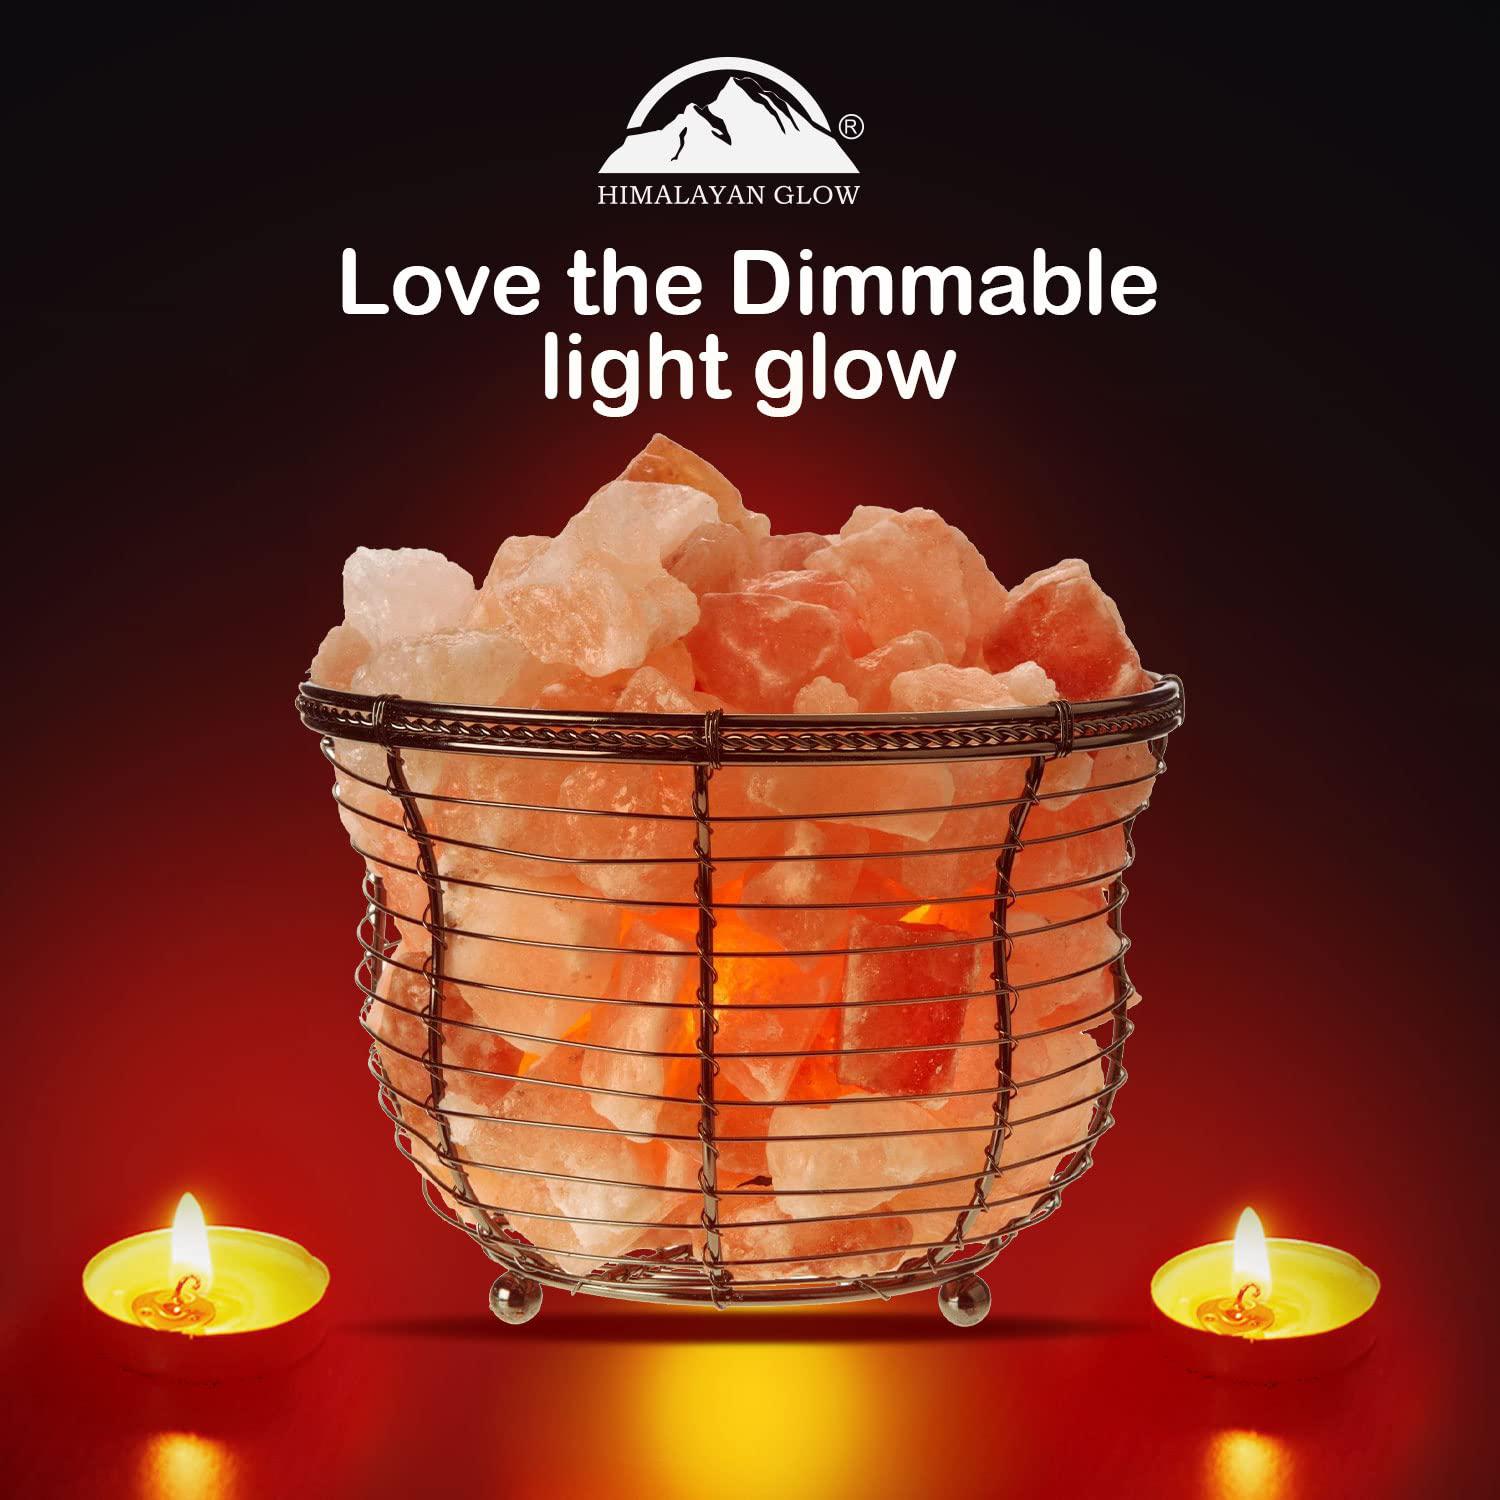 Himalayan Glow natural himalayan salt , tall round metal basket lamp with dimmer switch | 8-10 lbs